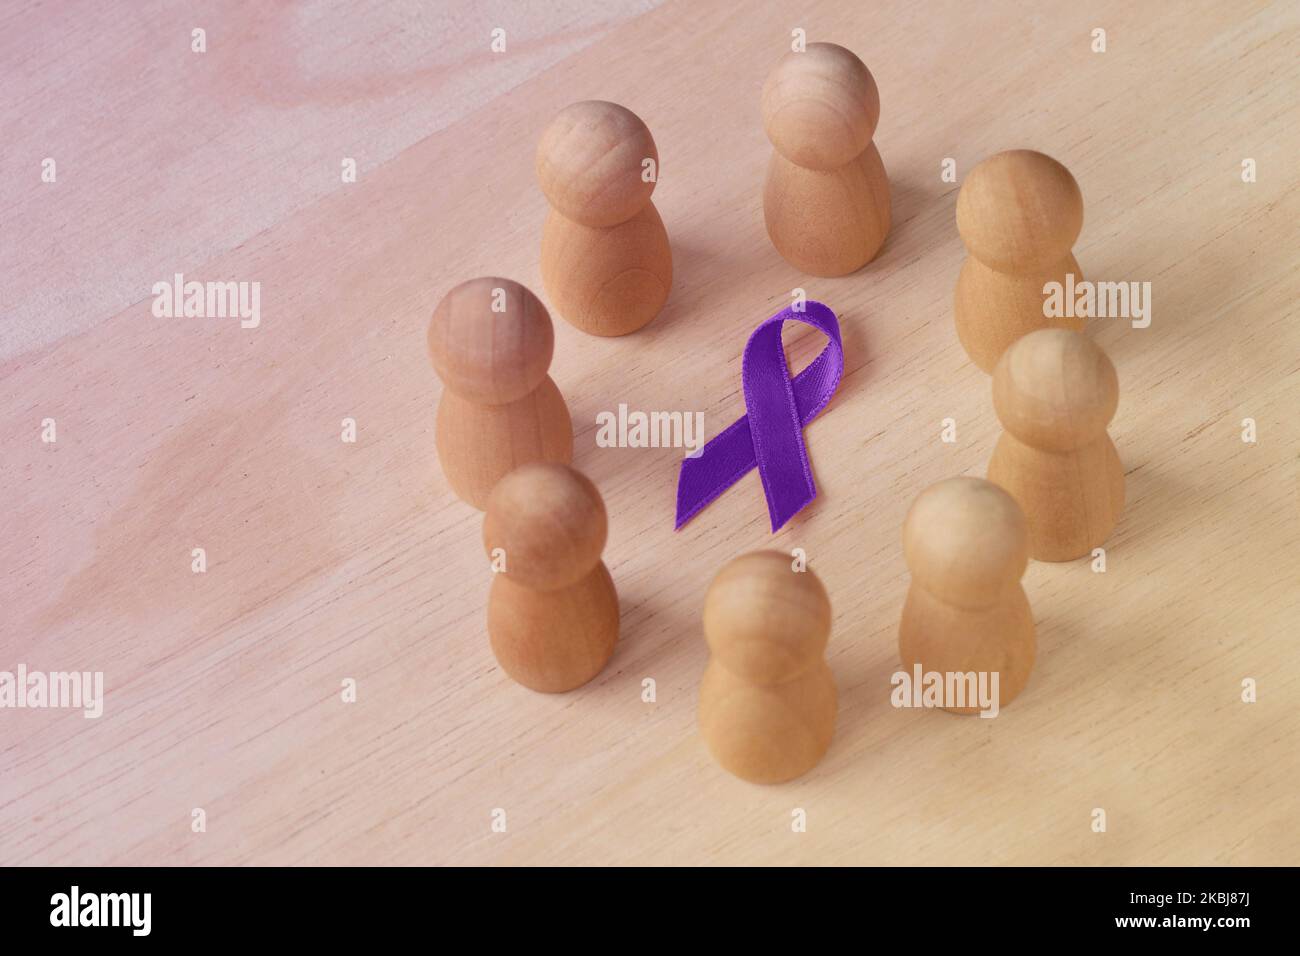 Holzpfand in einem Kreis um violettes Band - Konzept der häuslichen Gewalt Bewusstsein; Alzheimer-Krankheit, Bauchspeicheldrüsenkrebs, Epilepsie Bewusstsein und Stockfoto